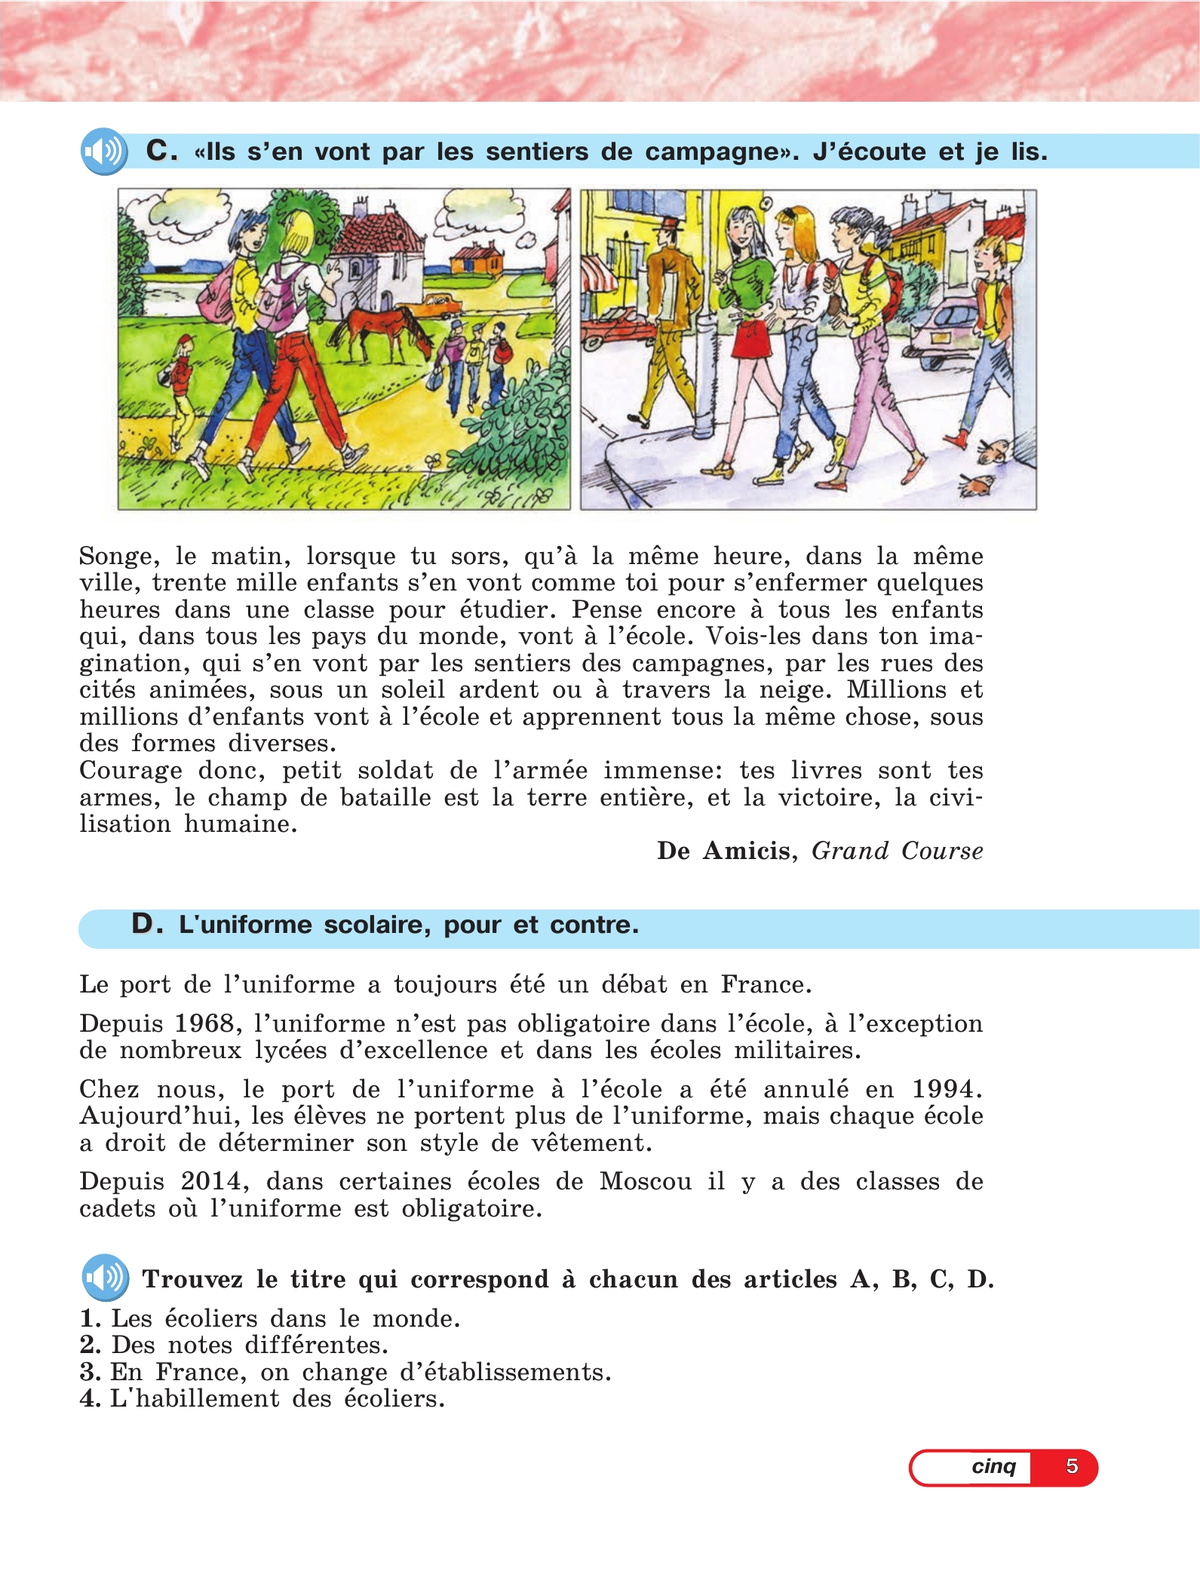 Французский язык. 5 класс. Углублённый уровень. Учебник. В 2 ч. Часть 2 11